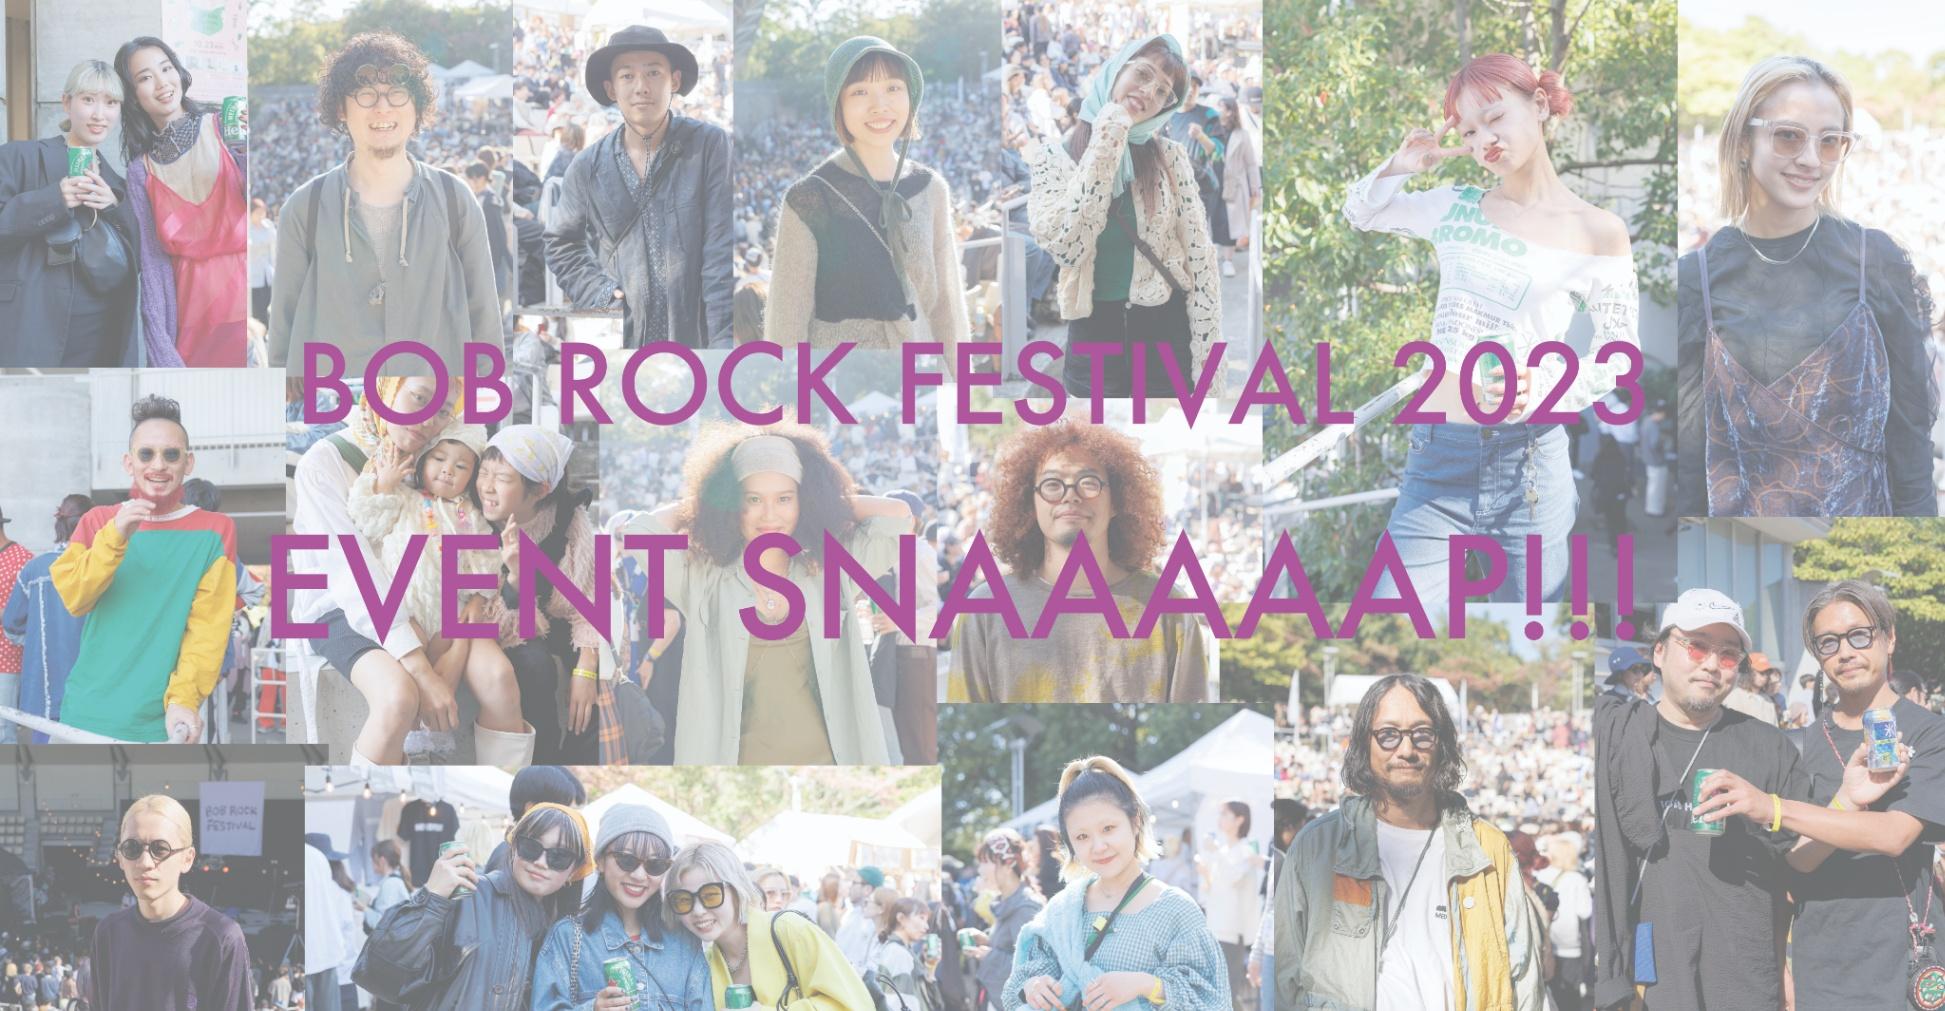 EVENT SNAAAAAP!!! 【BOB ROCK FESTIVAL 2023編 part.2】